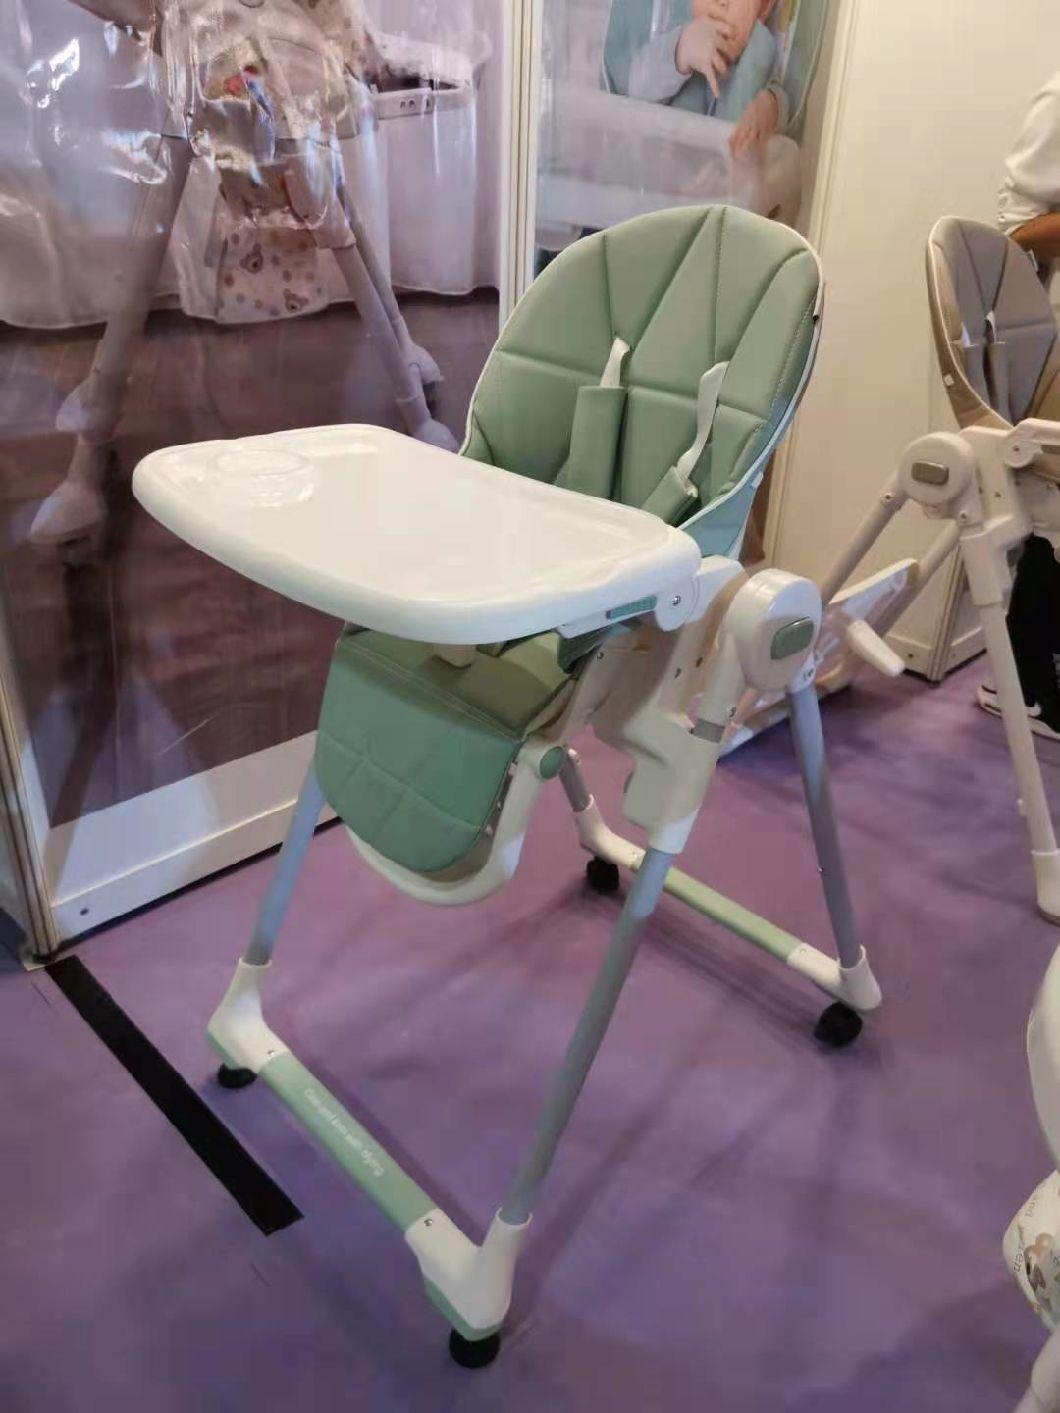 Modern Fashion Baby Children Furniture